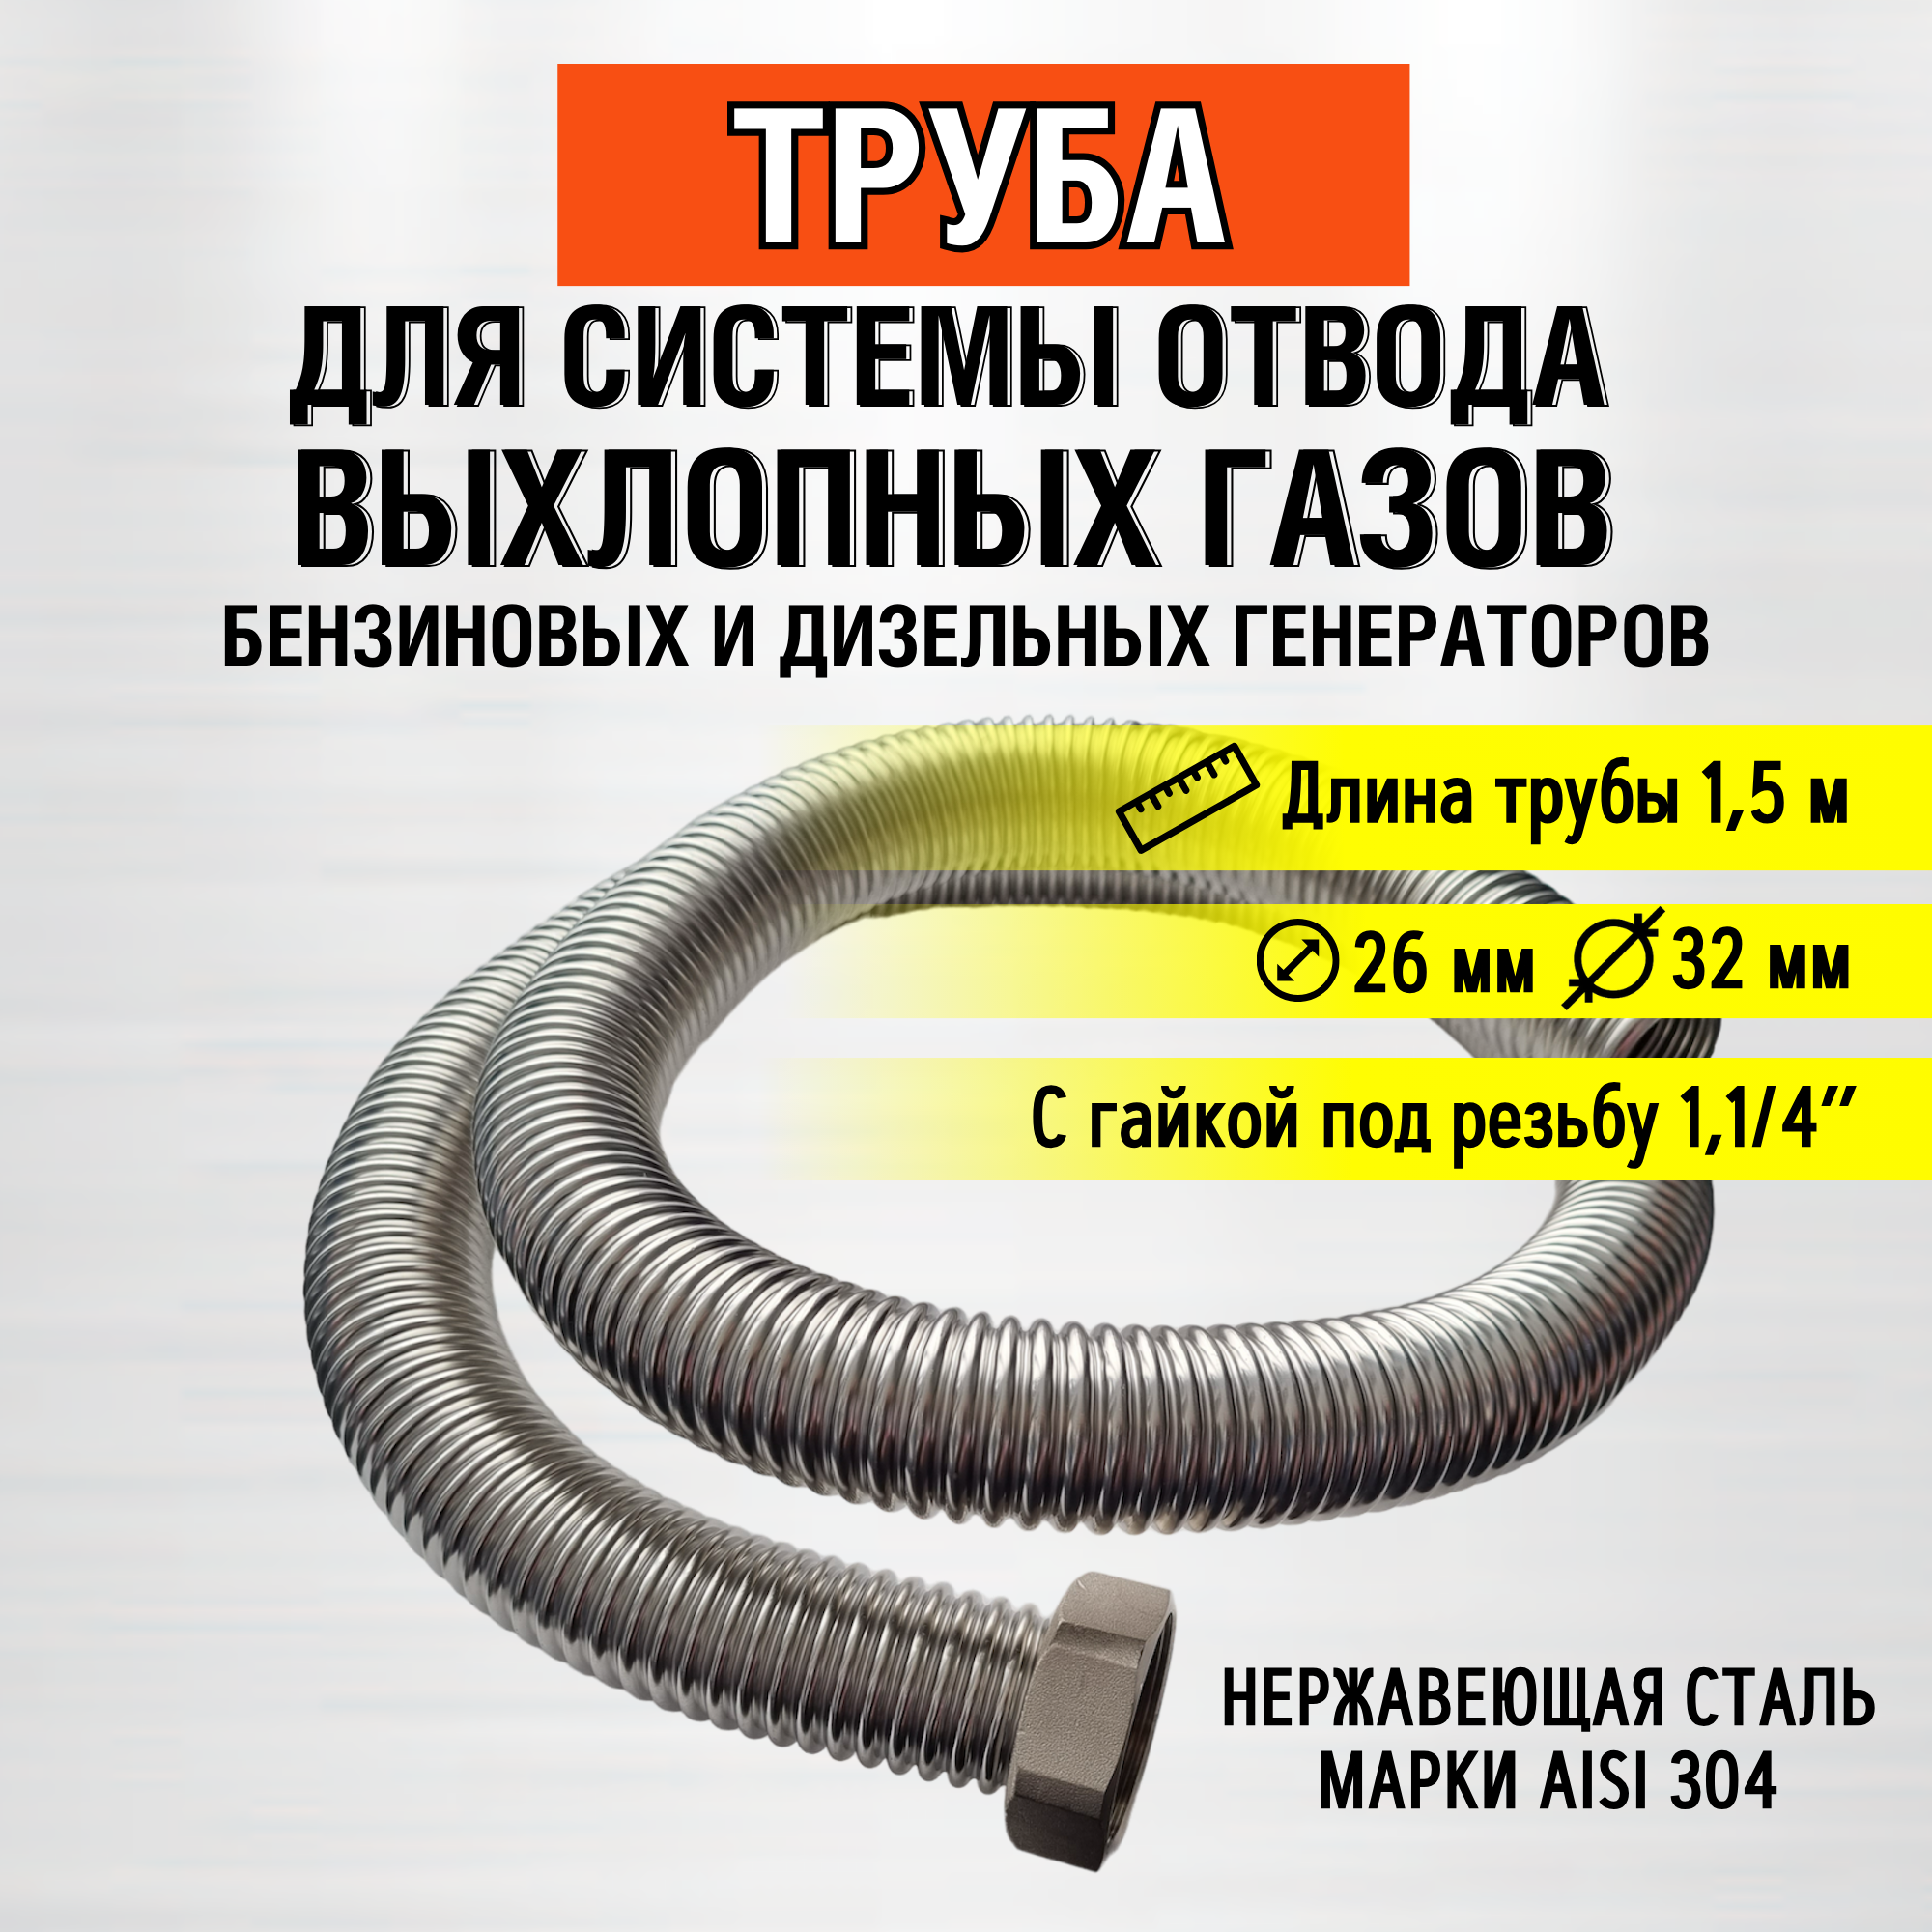 Труба 1,5м (гайка 1,1/4") Труба отвода выхлопных газов